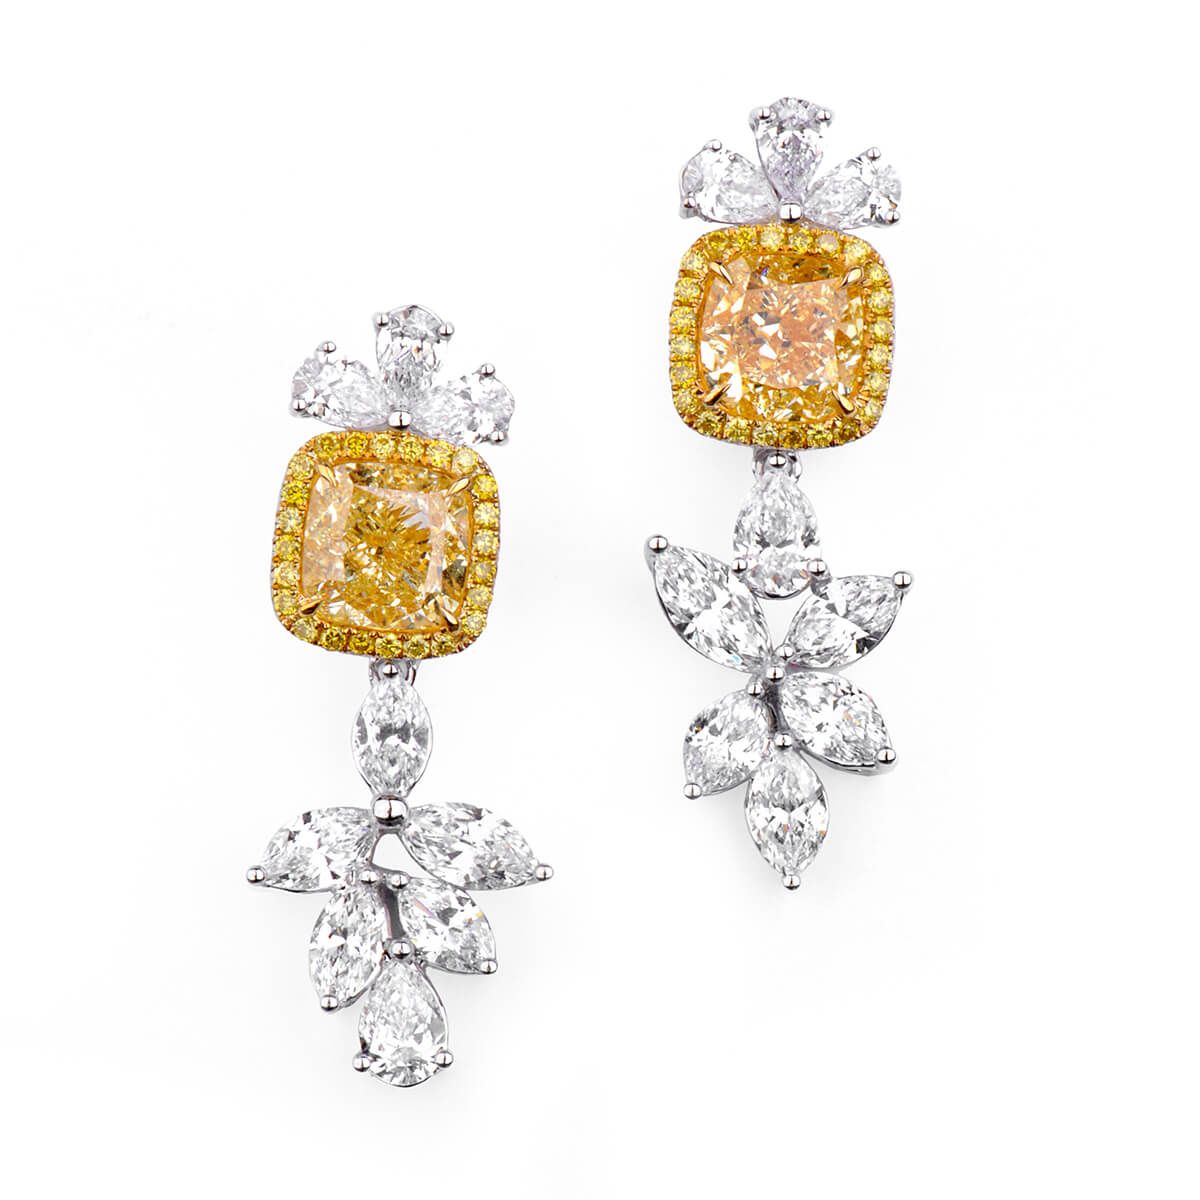 Fancy Light Yellow Diamond Earrings, 4.02 Ct. (5.07 Ct. TW), Cushion shape, GIA Certified, JCEF05344694